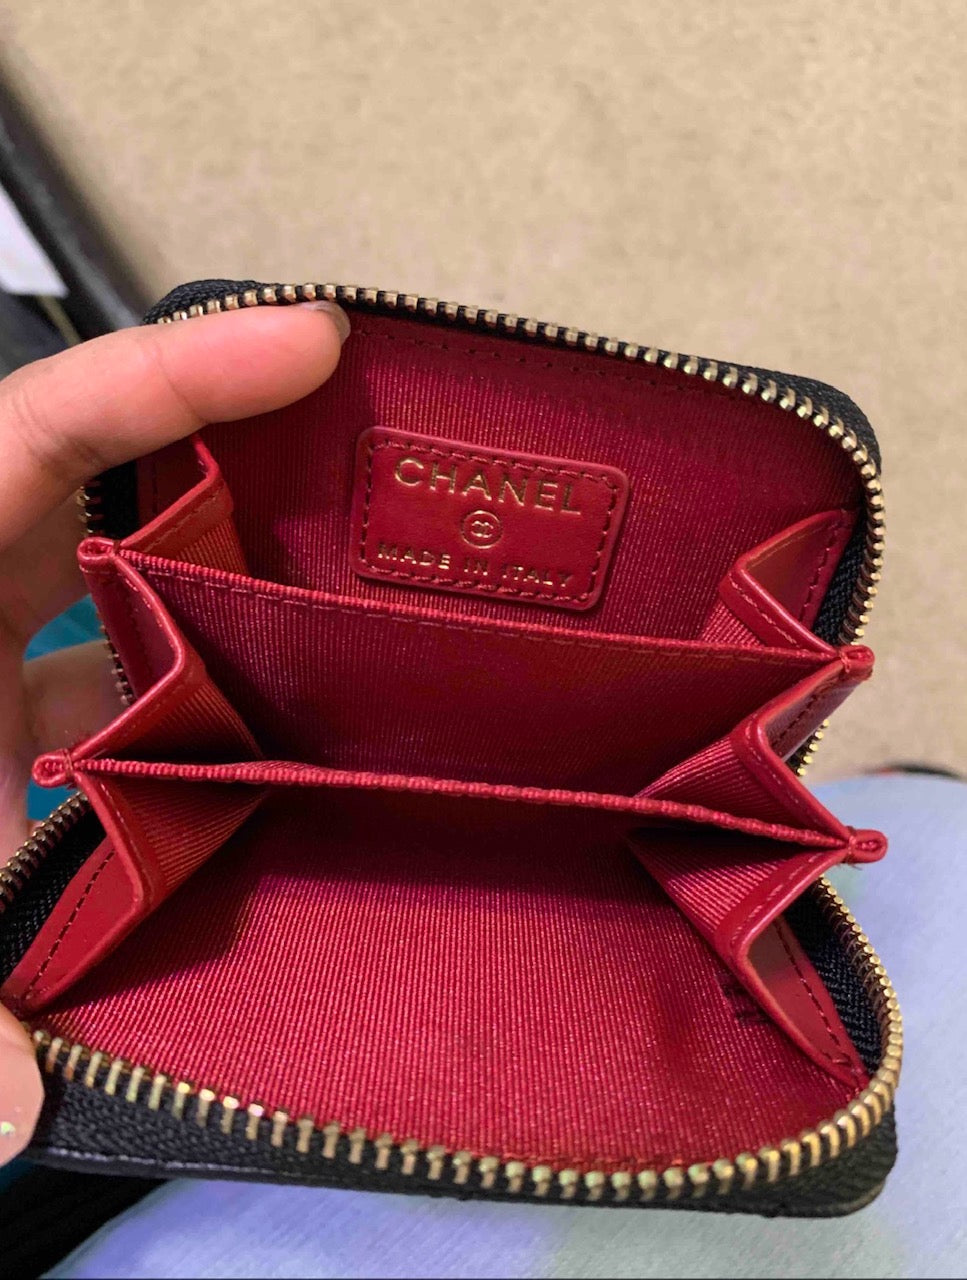 Chanel CC zip around coin purse card holder mini - Depop